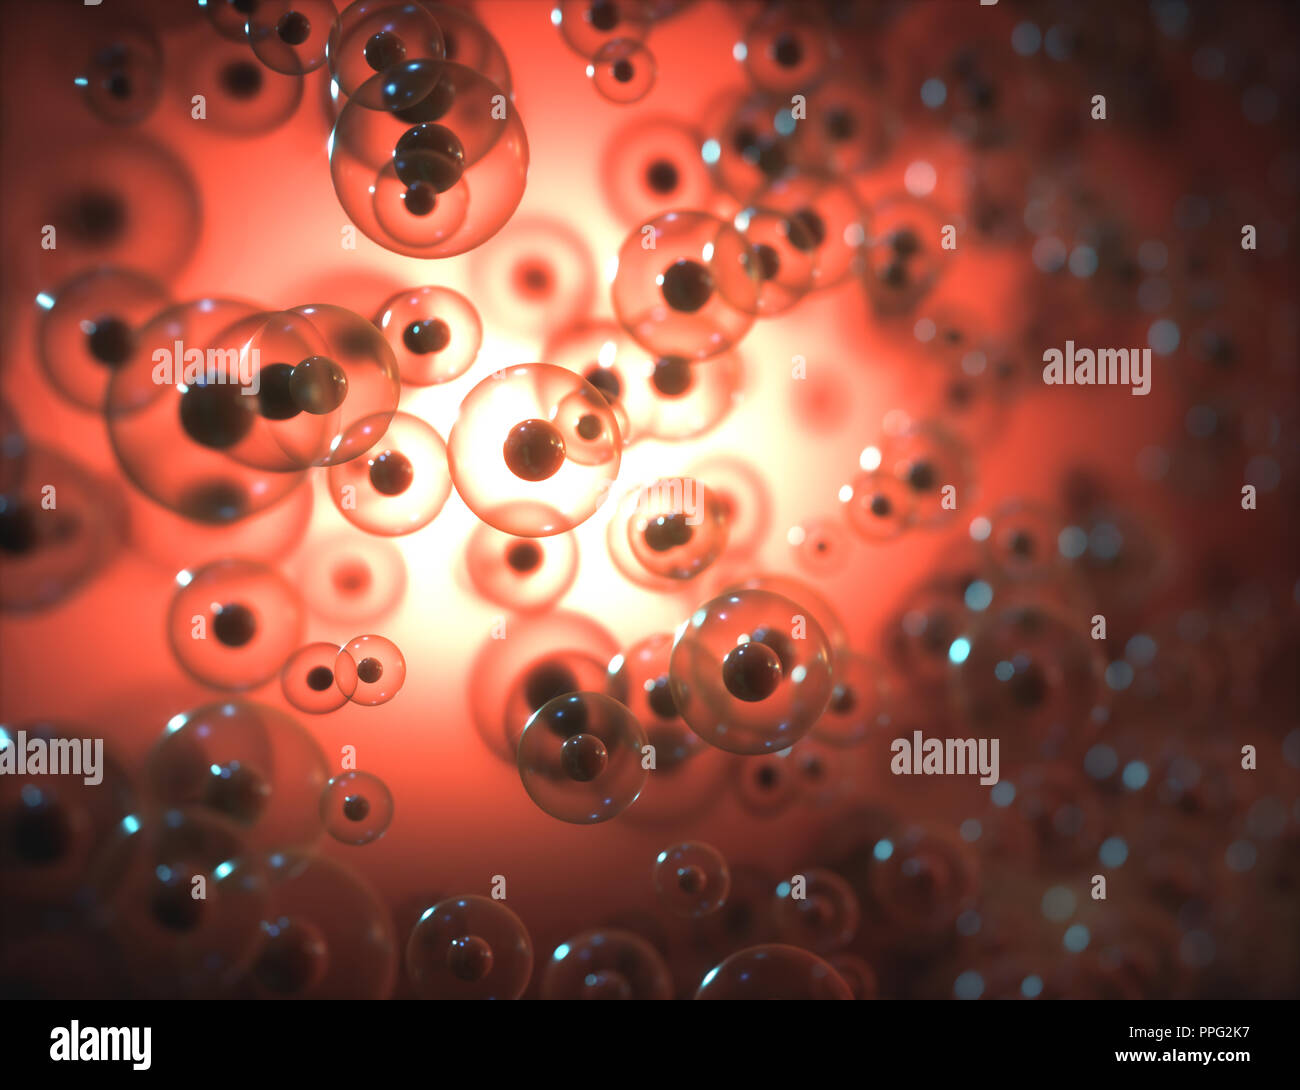 Image abstraite de sphères de la science concept. La biologie moléculaire, cellulaire structure scientifique. Banque D'Images